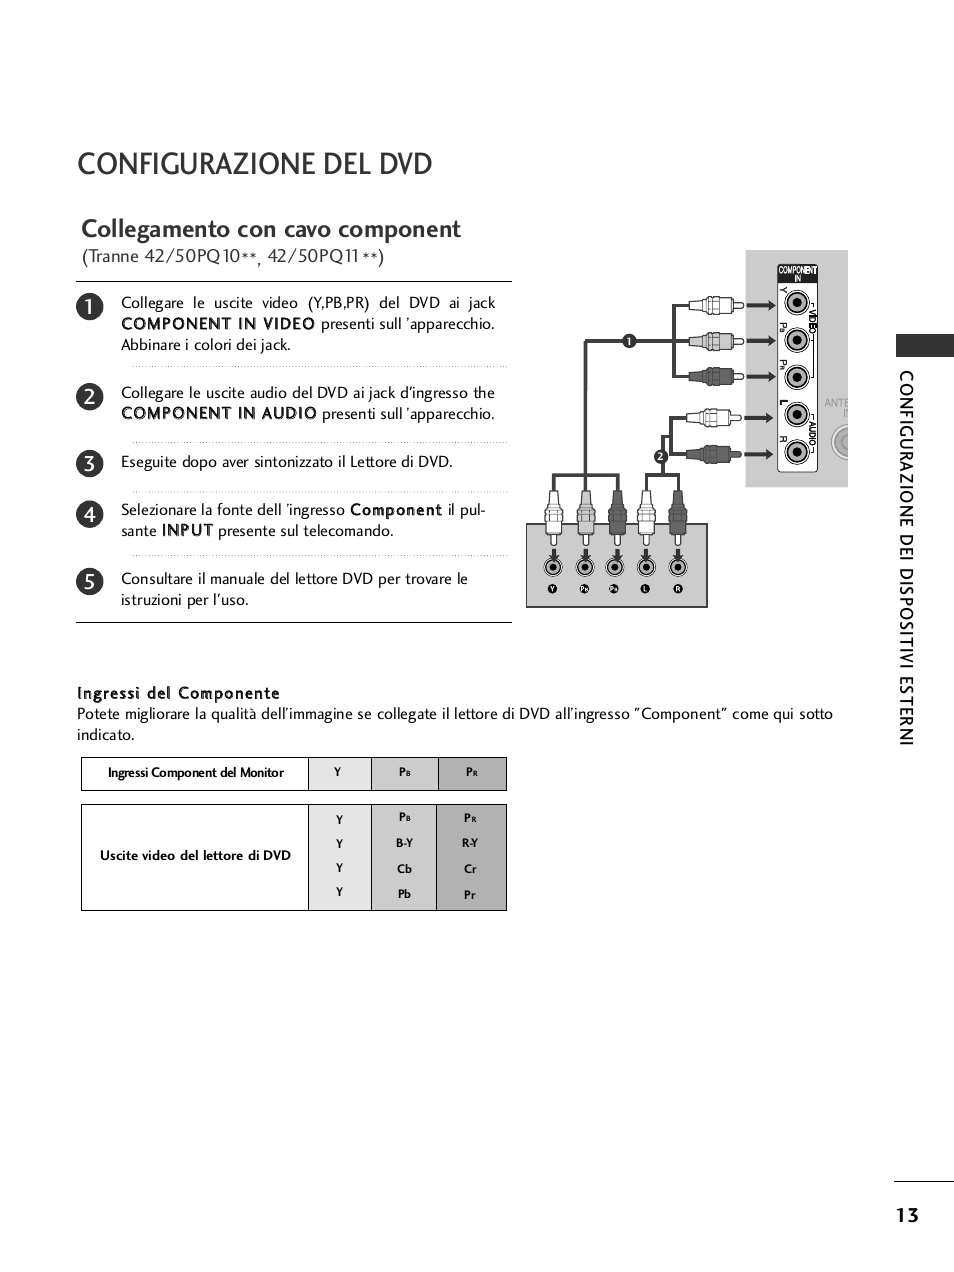 Configurazione del dvd, Collegamento con cavo component, Configurazione dei dispositivi es ter ni | LG 50PQ1100 Manuale d'uso | Pagina 15 / 140